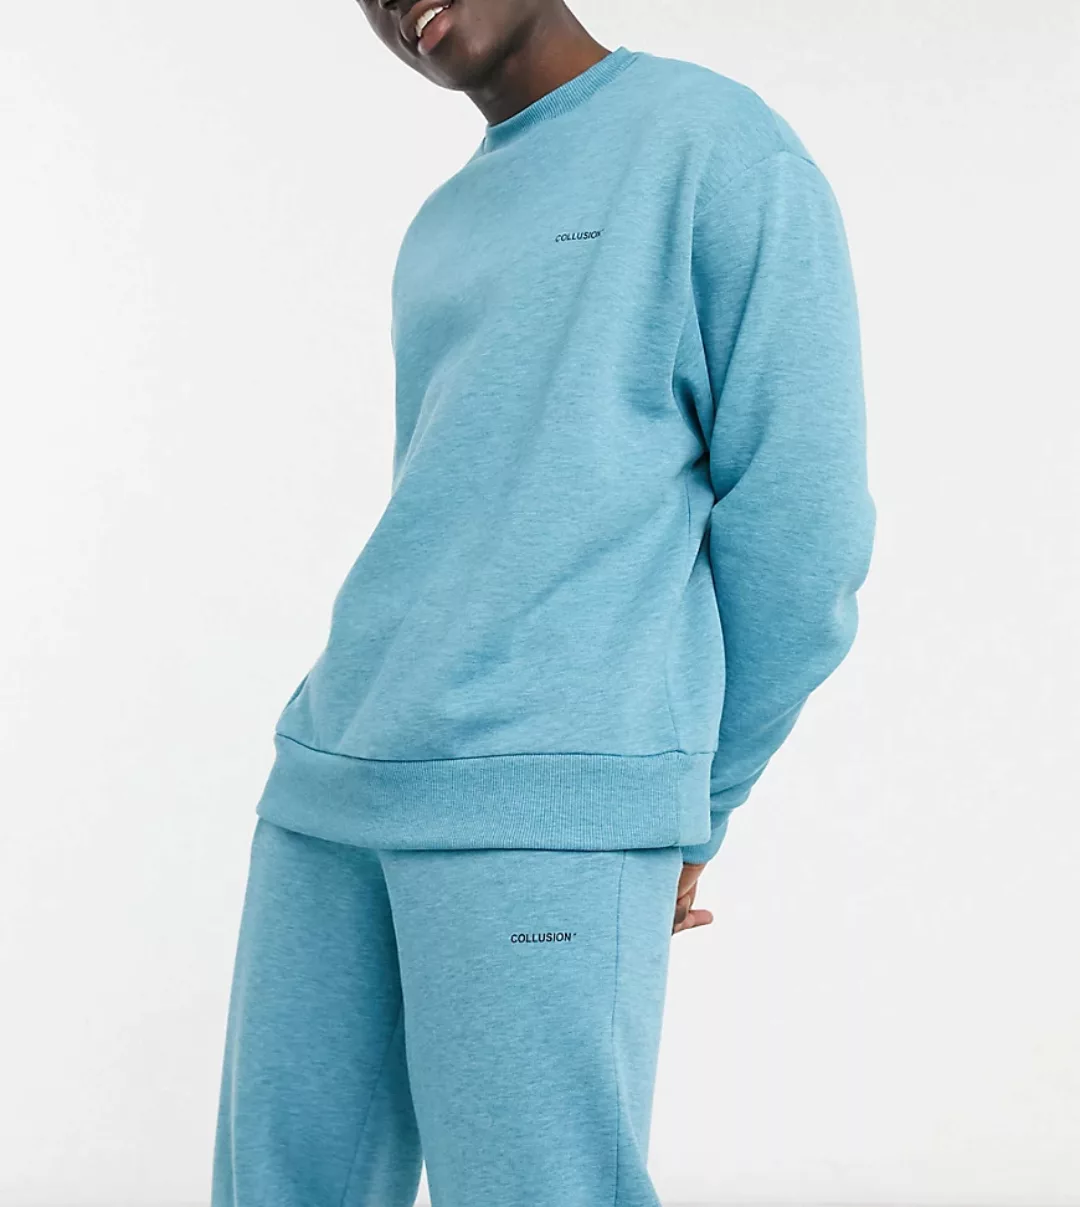 COLLUSION – Sweatshirt aus Stoff in hellem Blaugrau, Kombiteil günstig online kaufen